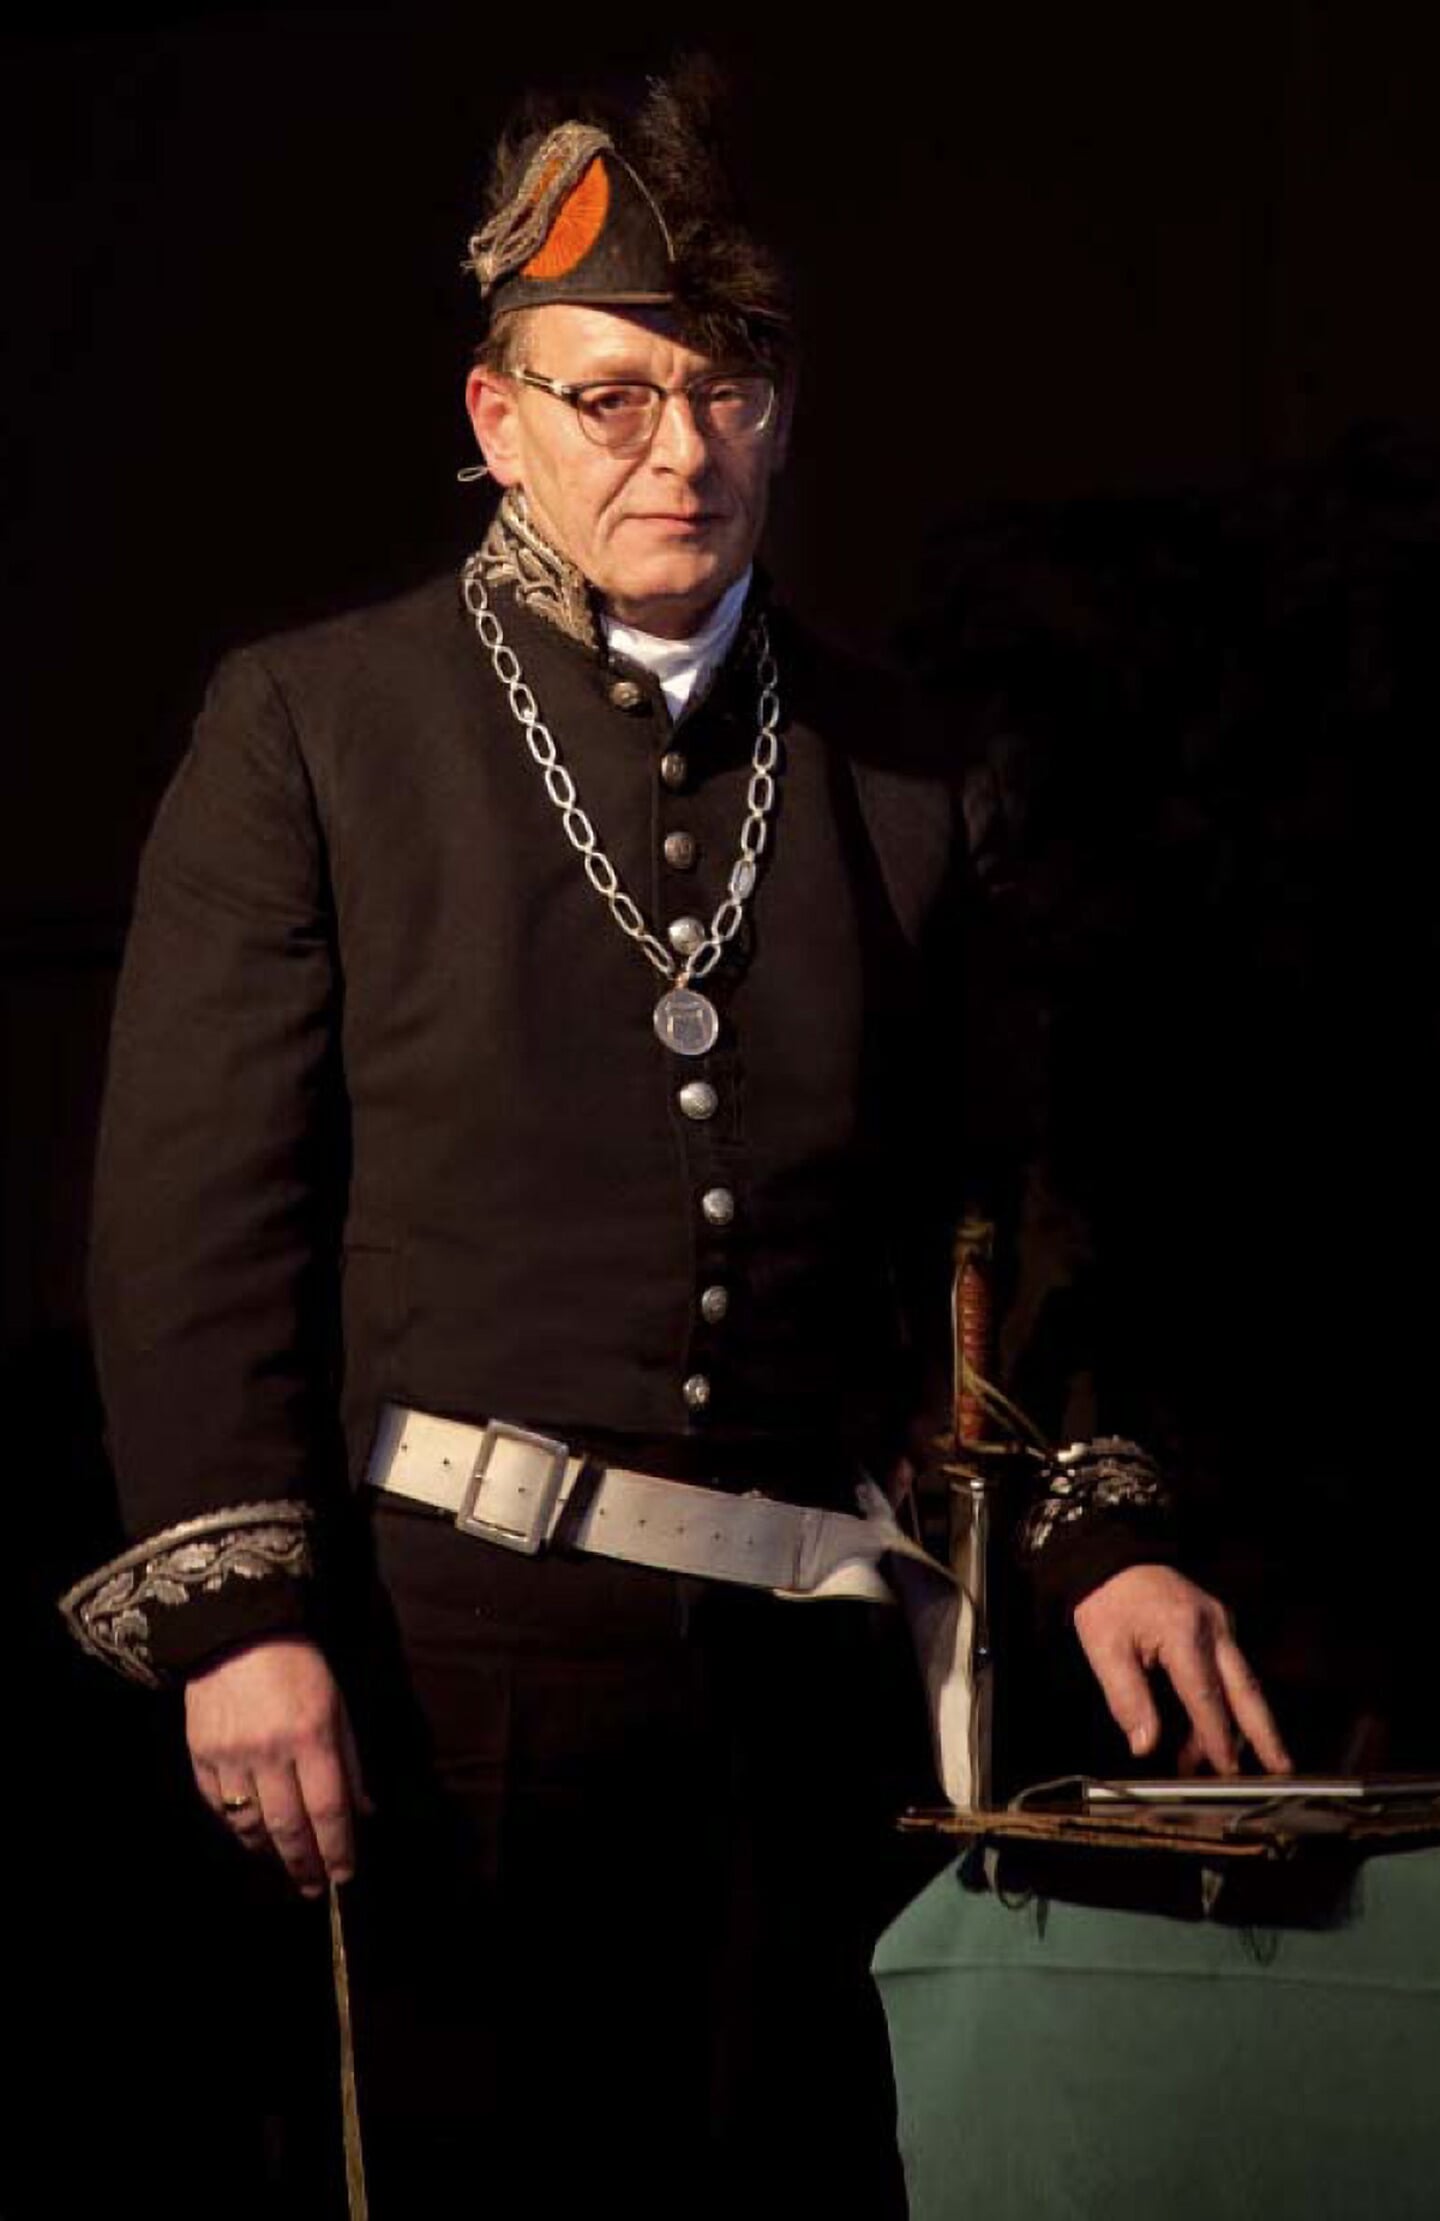 Burgemeester Janssen als zijn voorganger Johan Jacob Clotterbooke Patijn, bij het eeuwfeest van Den Dolder in 2012.